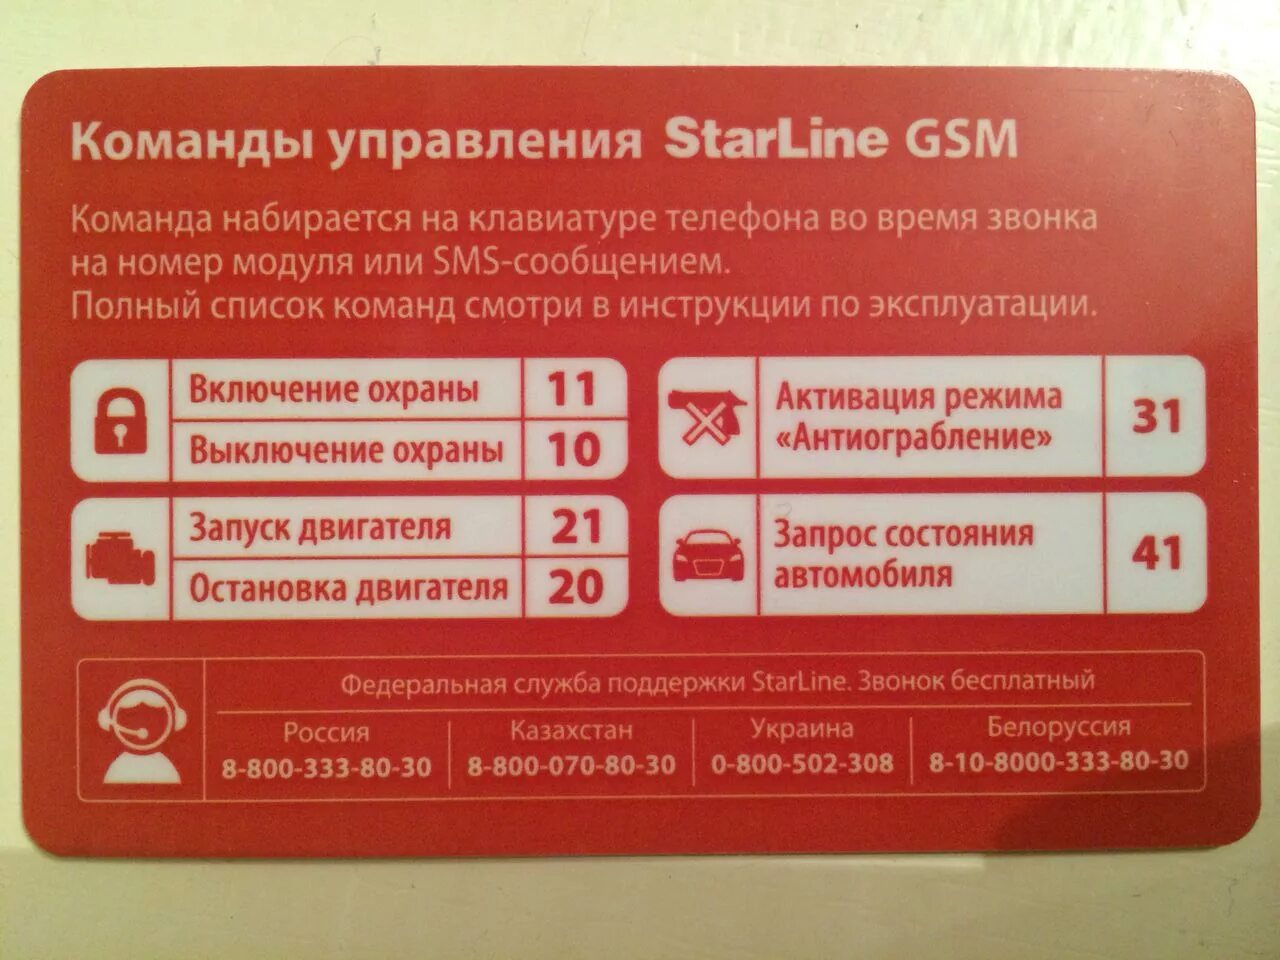 Старлайн а93 GSM модуль. Коды команд старлайн GSM а93. SMS команды STARLINE a93. Komandi upravleniya STARLINE GSM а93.